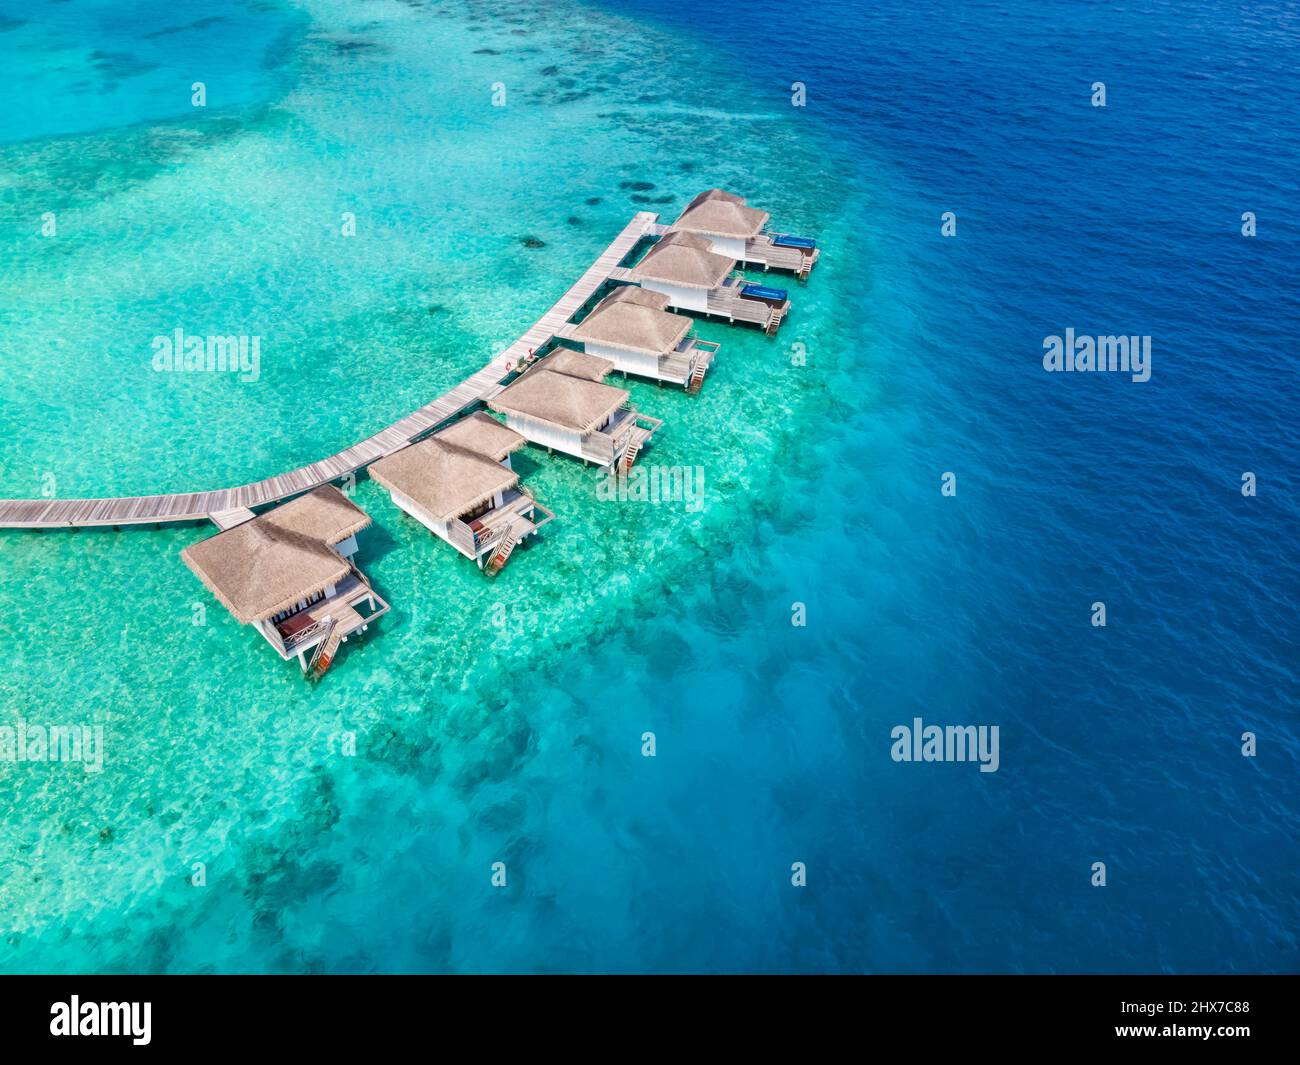 Überwasser-Villen auf tropischer Atoll-Insel für Urlaubsreisen und Flitterwochen. Luxus-Resort-Hotel auf den Malediven oder der Karibik mit türkisfarbenem Meer Stockfoto